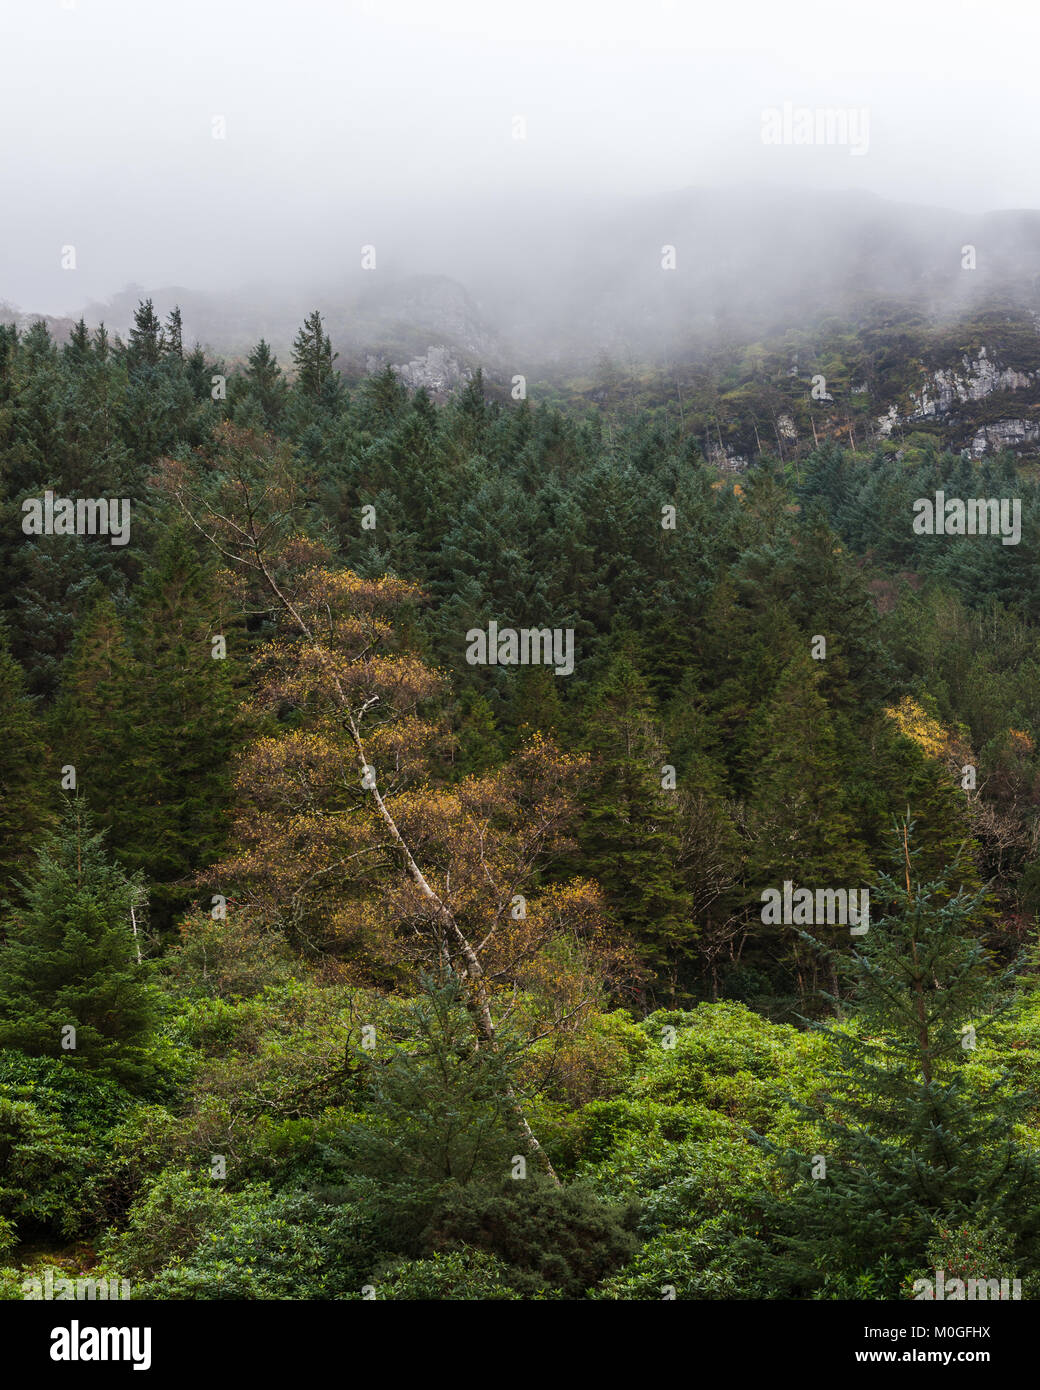 Nebel rollt von den Hügeln auf einem Pinienwald. Es gibt eine einzige Laubbaum in den Vordergrund mit Herbst Laub. Stockfoto